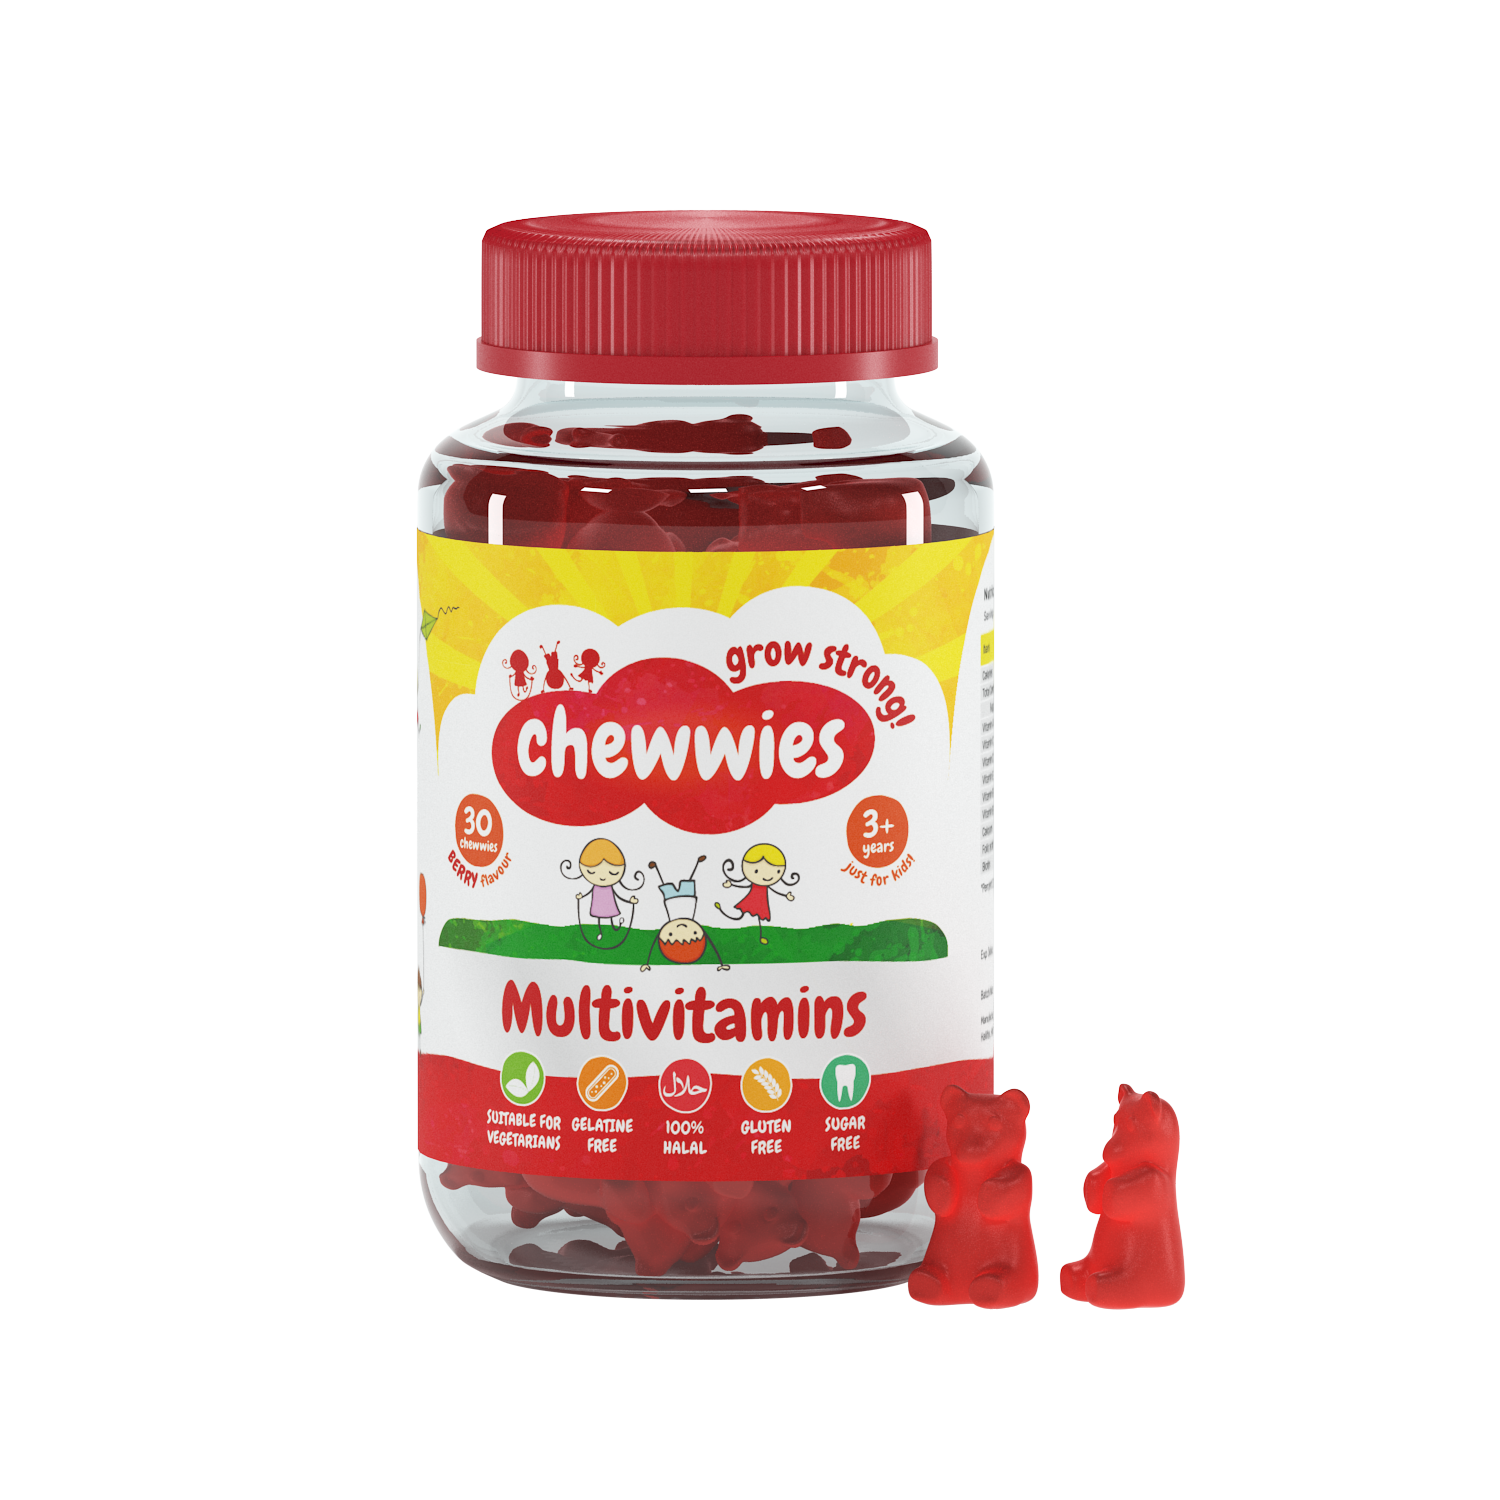 Chewwies Multivitamínicos y micronutrientes en 30 gominolas veganas, número 1 del Reino Unido en vitaminas sin gelatina y sin azúcar (esencial)